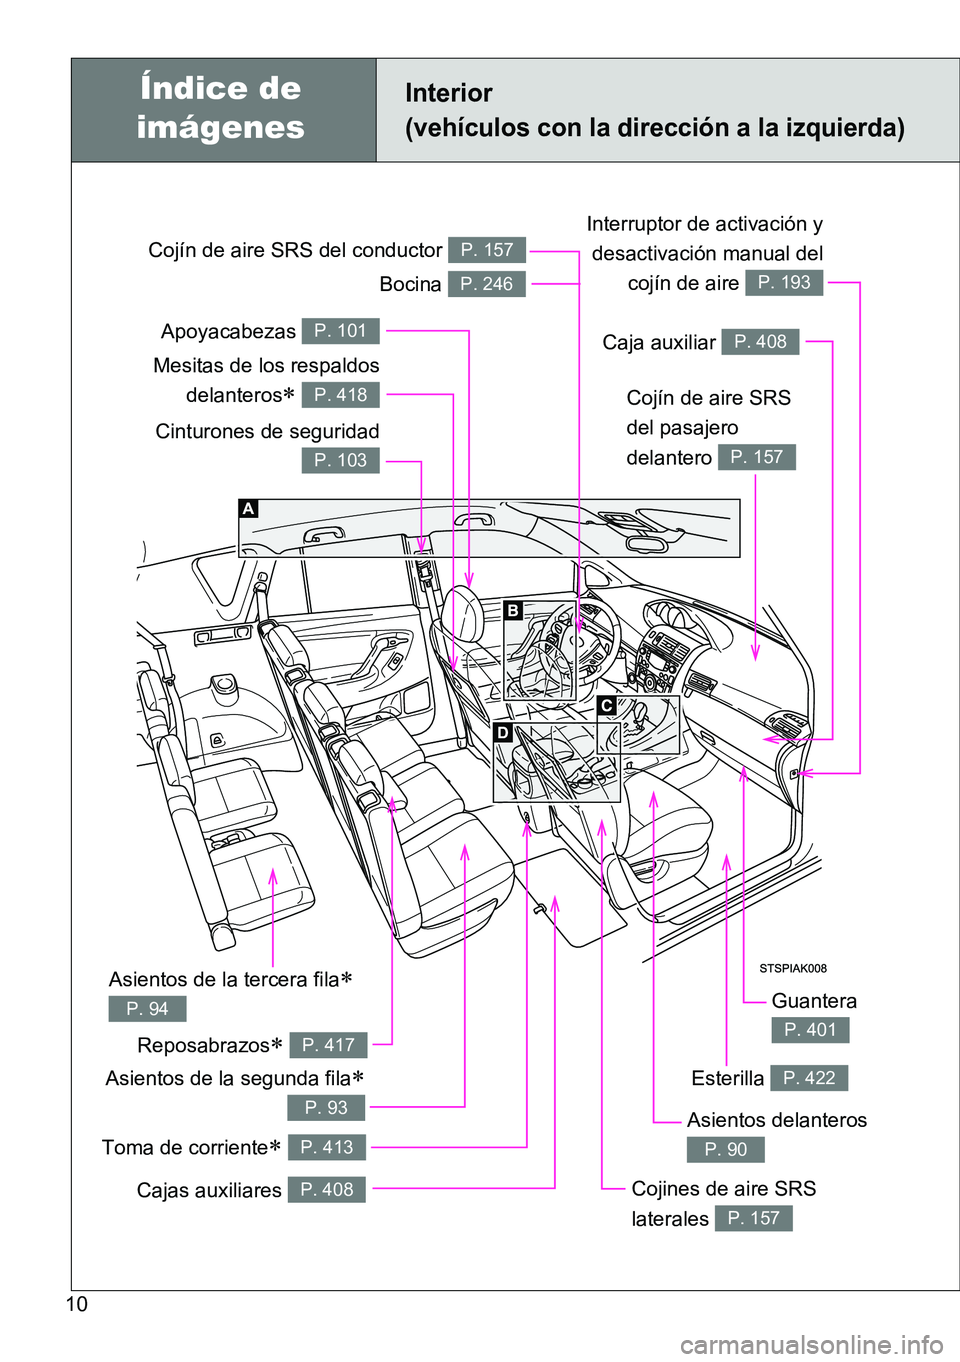 TOYOTA VERSO 2015  Manuale de Empleo (in Spanish) 10
Toma de corriente P. 413
Interior 
(vehículos con la dirección a la izquierda)
Cinturones de seguridad
P. 103
Cojín de aire SRS 
del pasajero 
delantero 
P. 157
Cojín de aire SRS del conduct